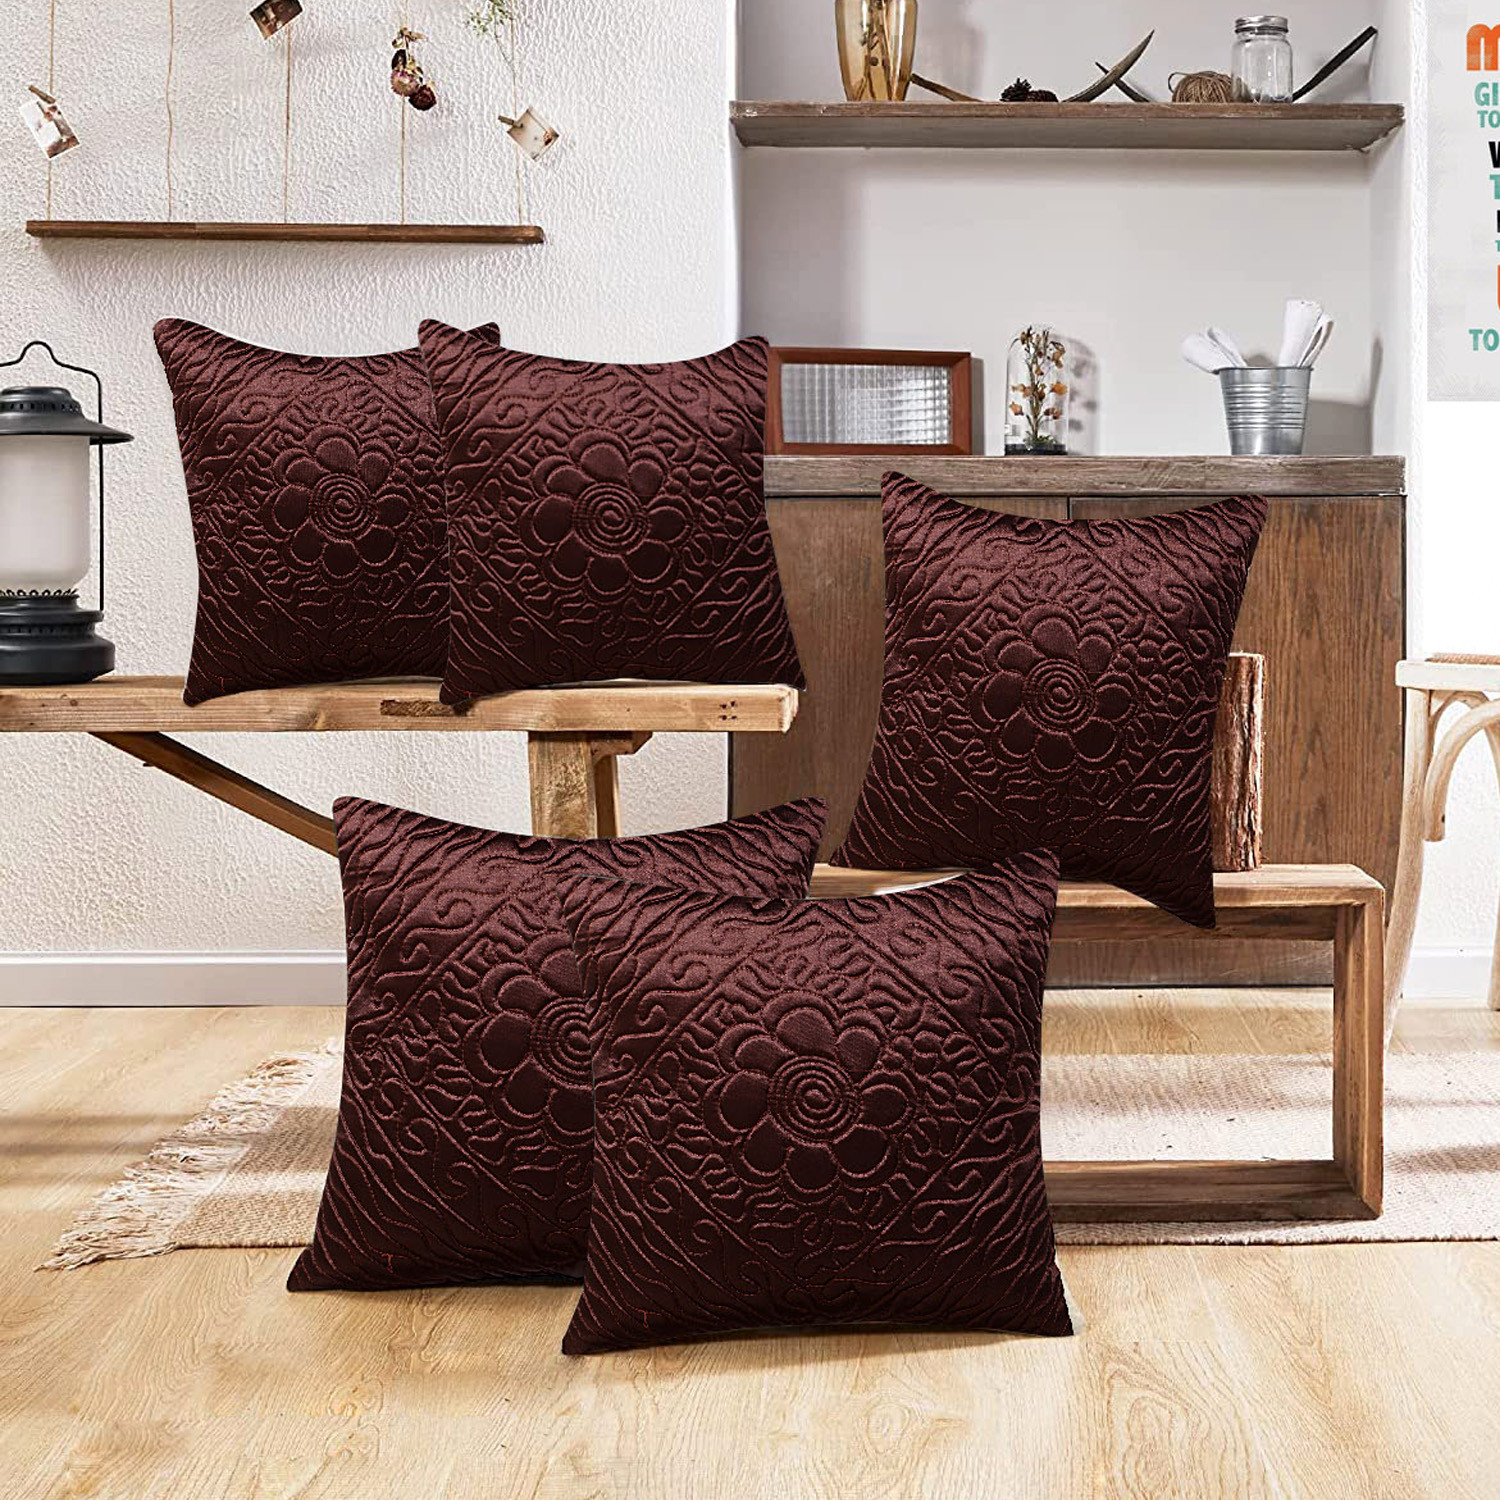 Kuber Industries Embossed Flower Print Cushion Cover|Ractangle Cushion Covers|Sofa Cushion Covers|Cushion Covers 16 inch x 16 inch|Cushion Cover Set of 5 (Brown)